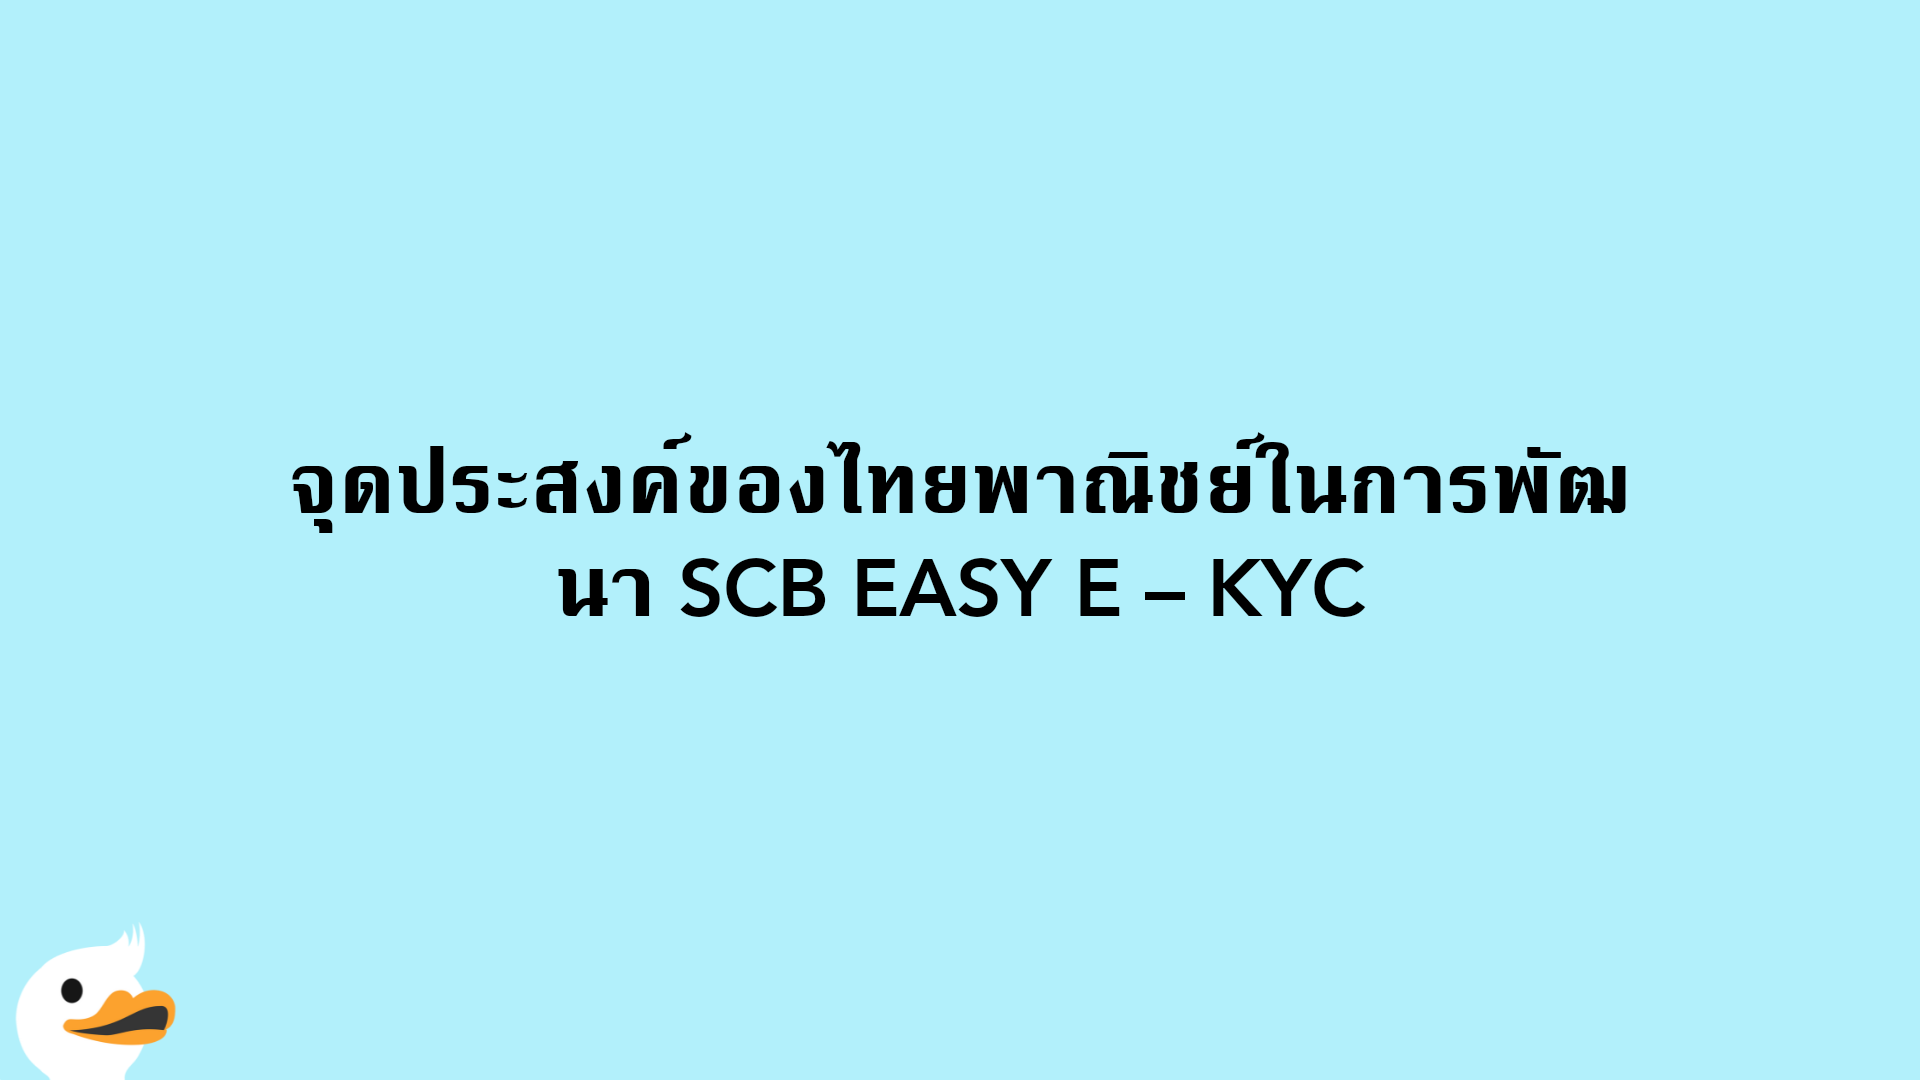 จุดประสงค์ของไทยพาณิชย์ในการพัฒนา SCB EASY E – KYC